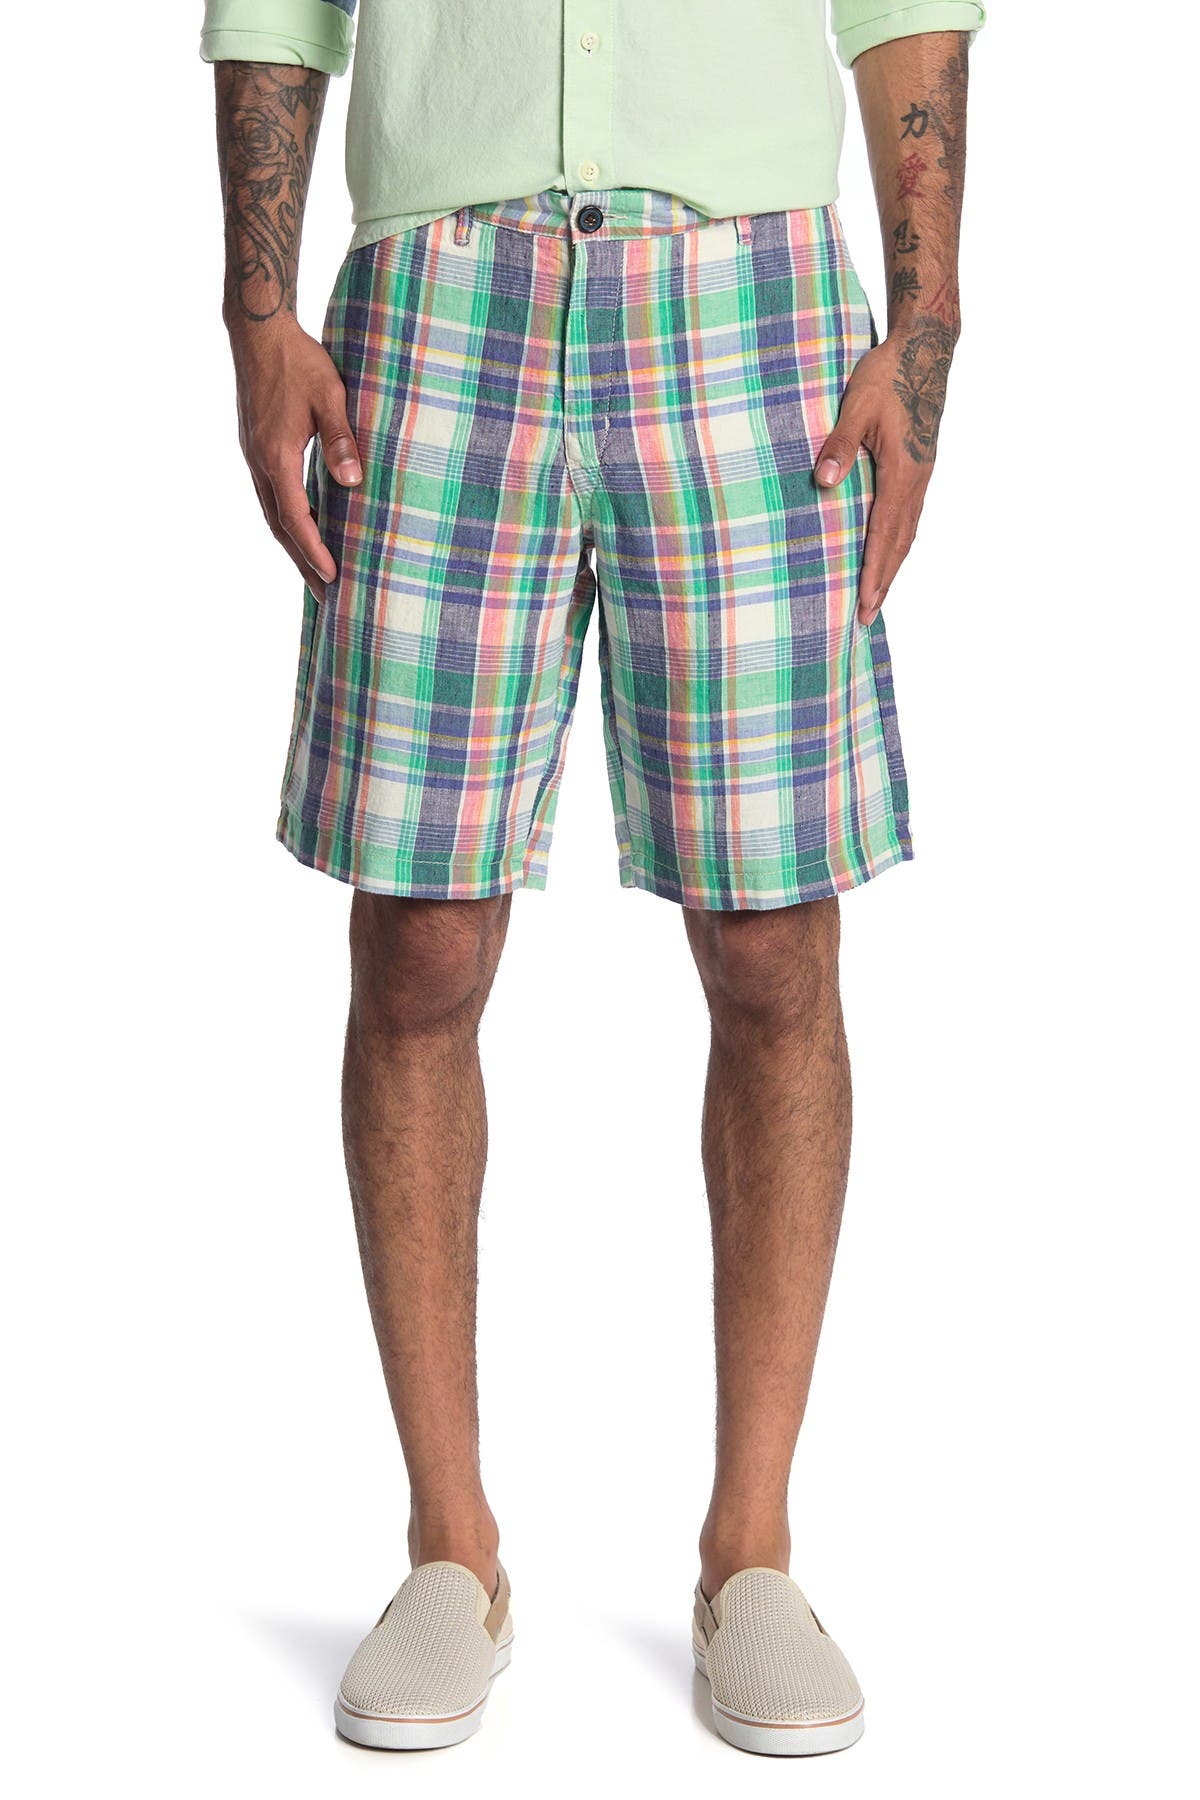 tommy bahama bermuda shorts mens